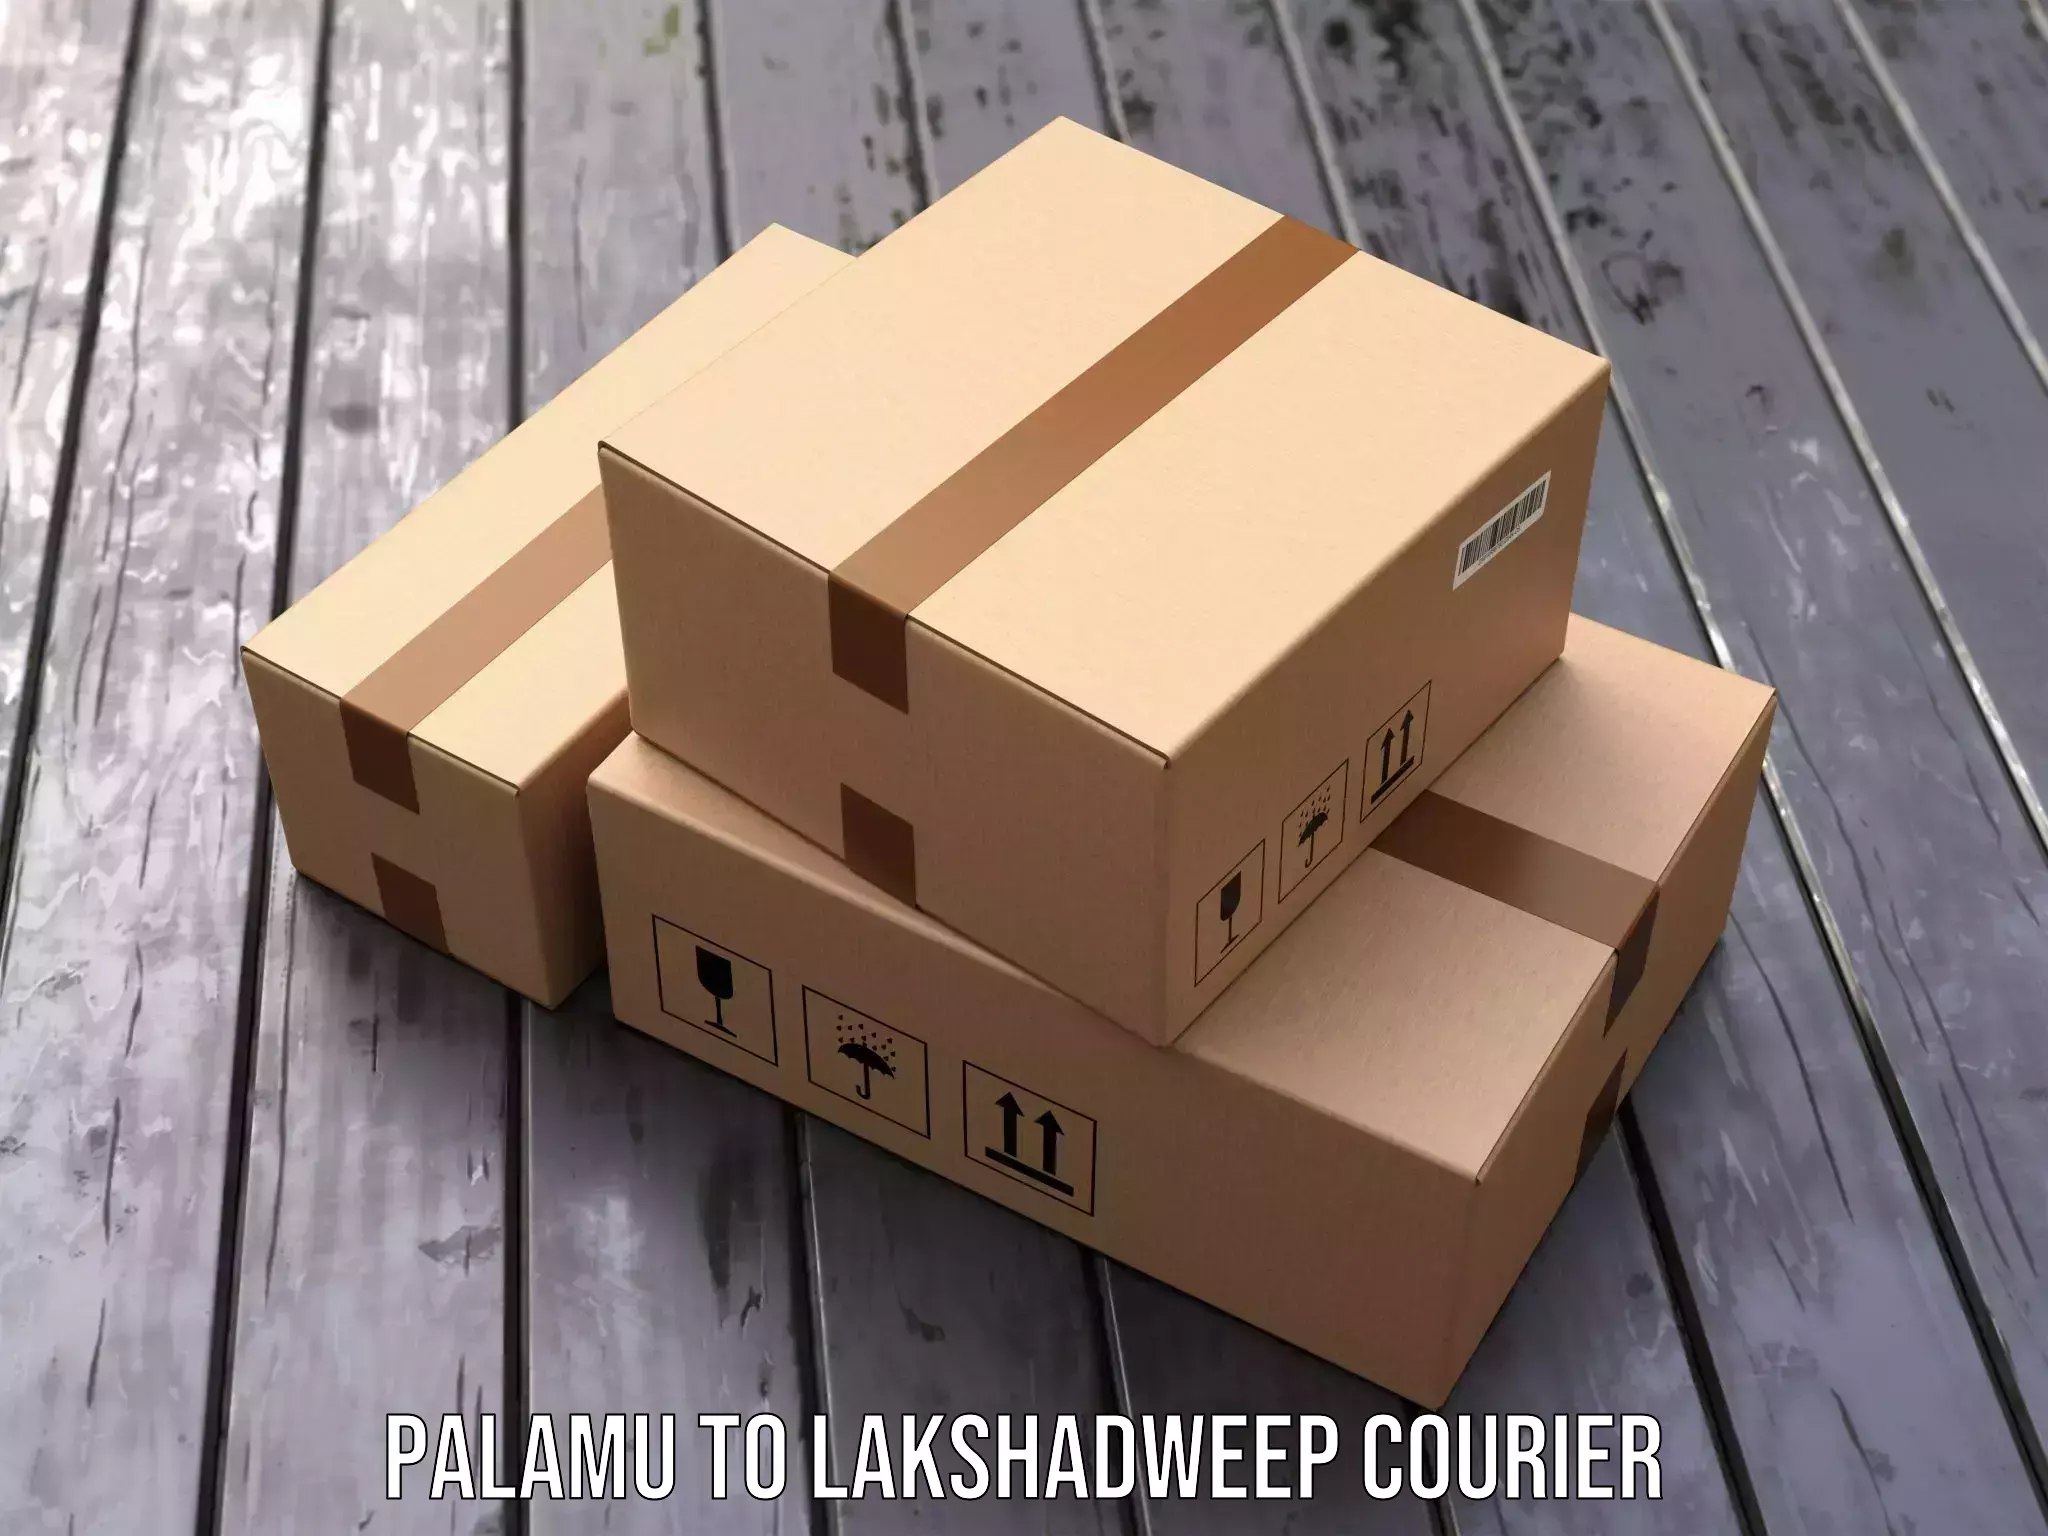 Express package transport Palamu to Lakshadweep